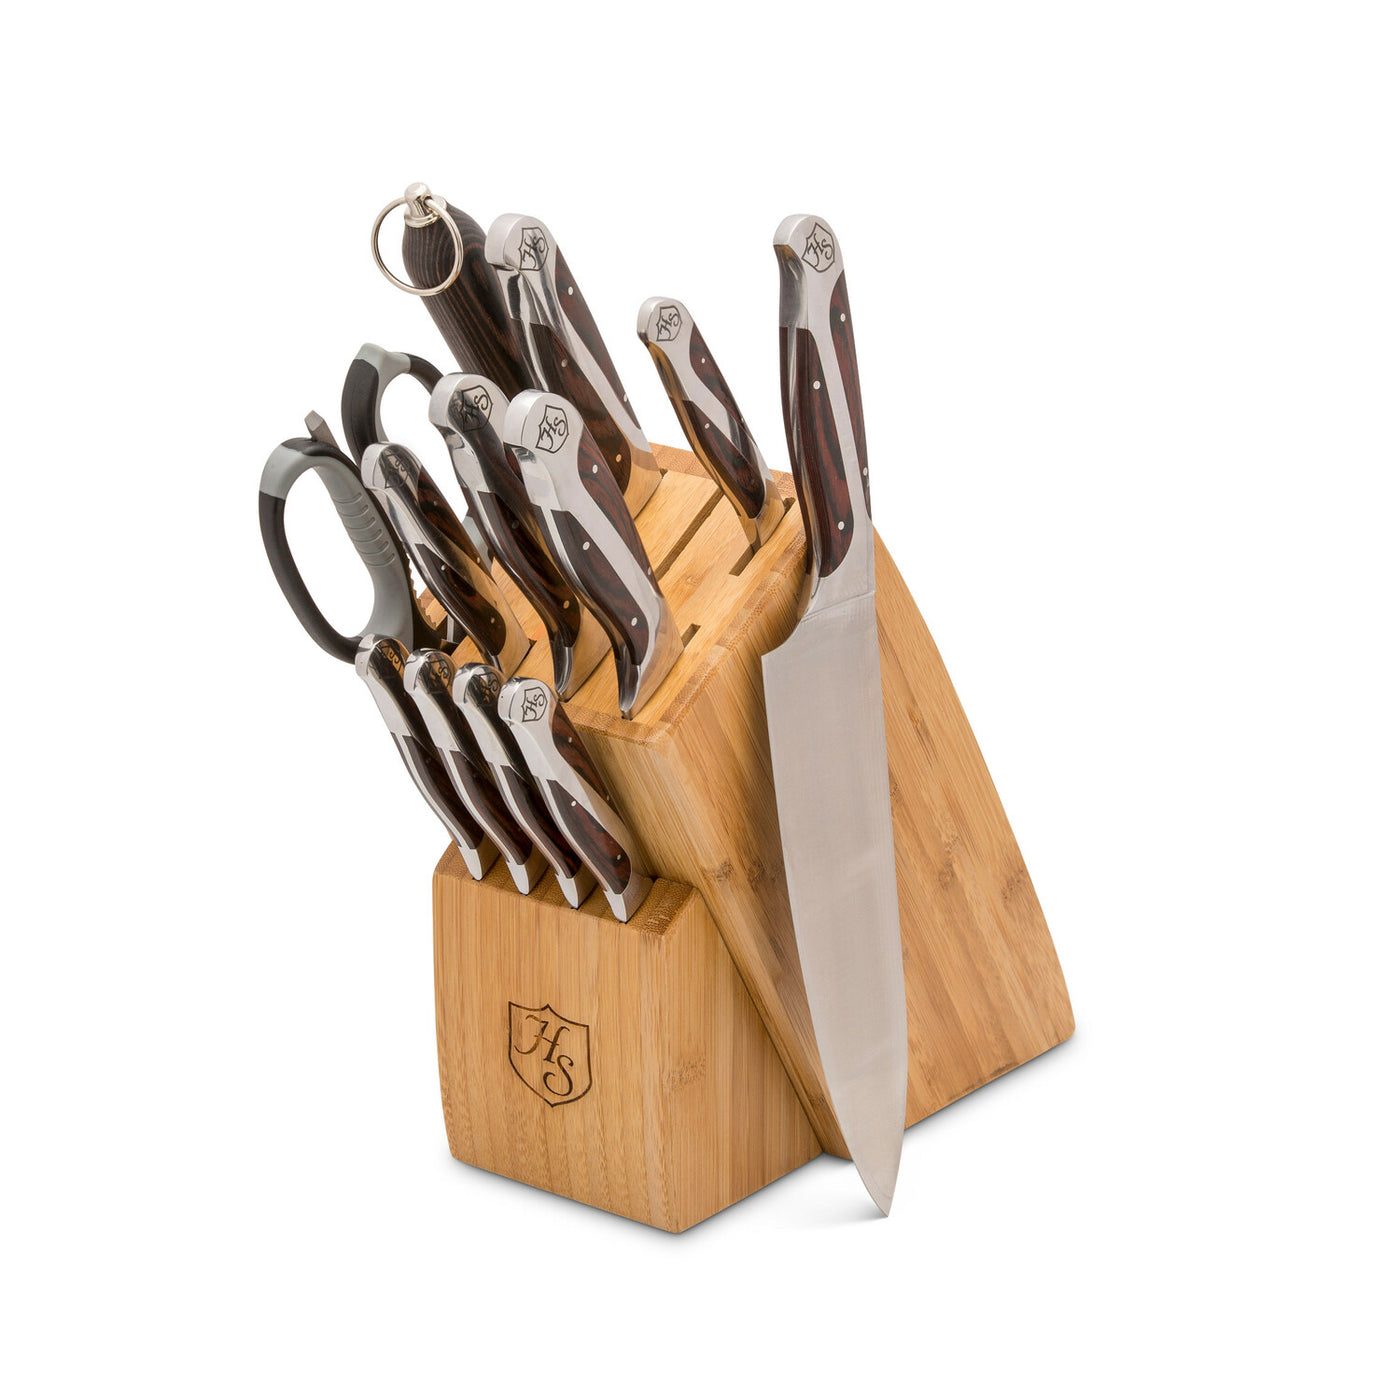 12 Piece Cutlery Essentials